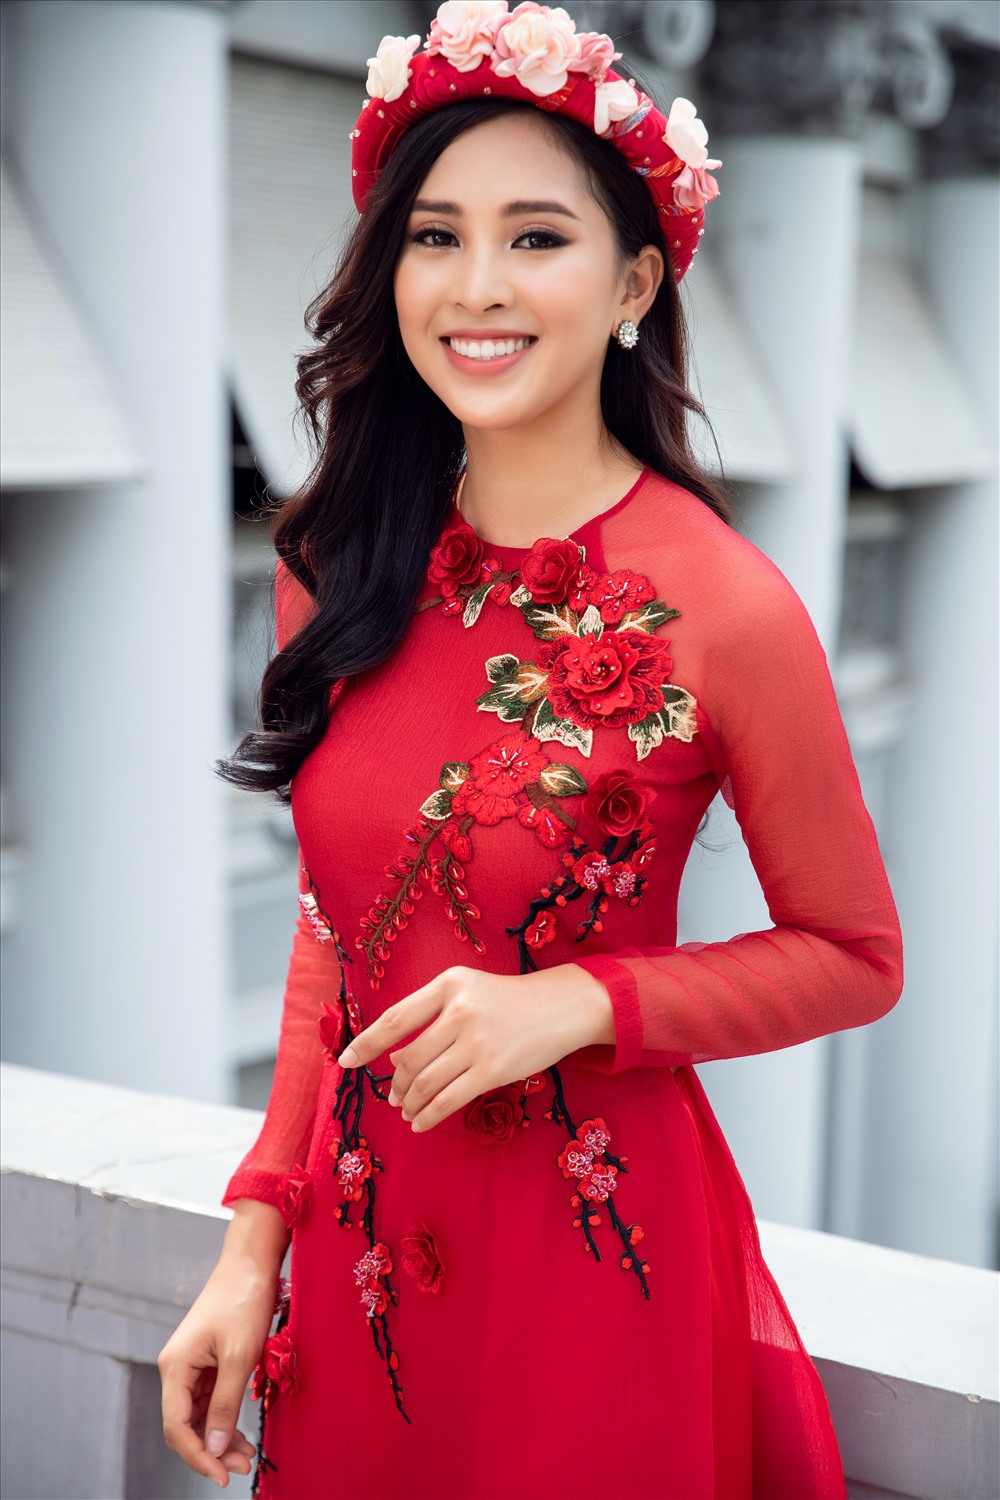 Kể từ sau khi trở về từ Miss World 2018, Hoa hậu Tiểu Vy ngày càng được đánh giá cao nhan sắc và thần thái ngày càng chuyên nghiệp. 